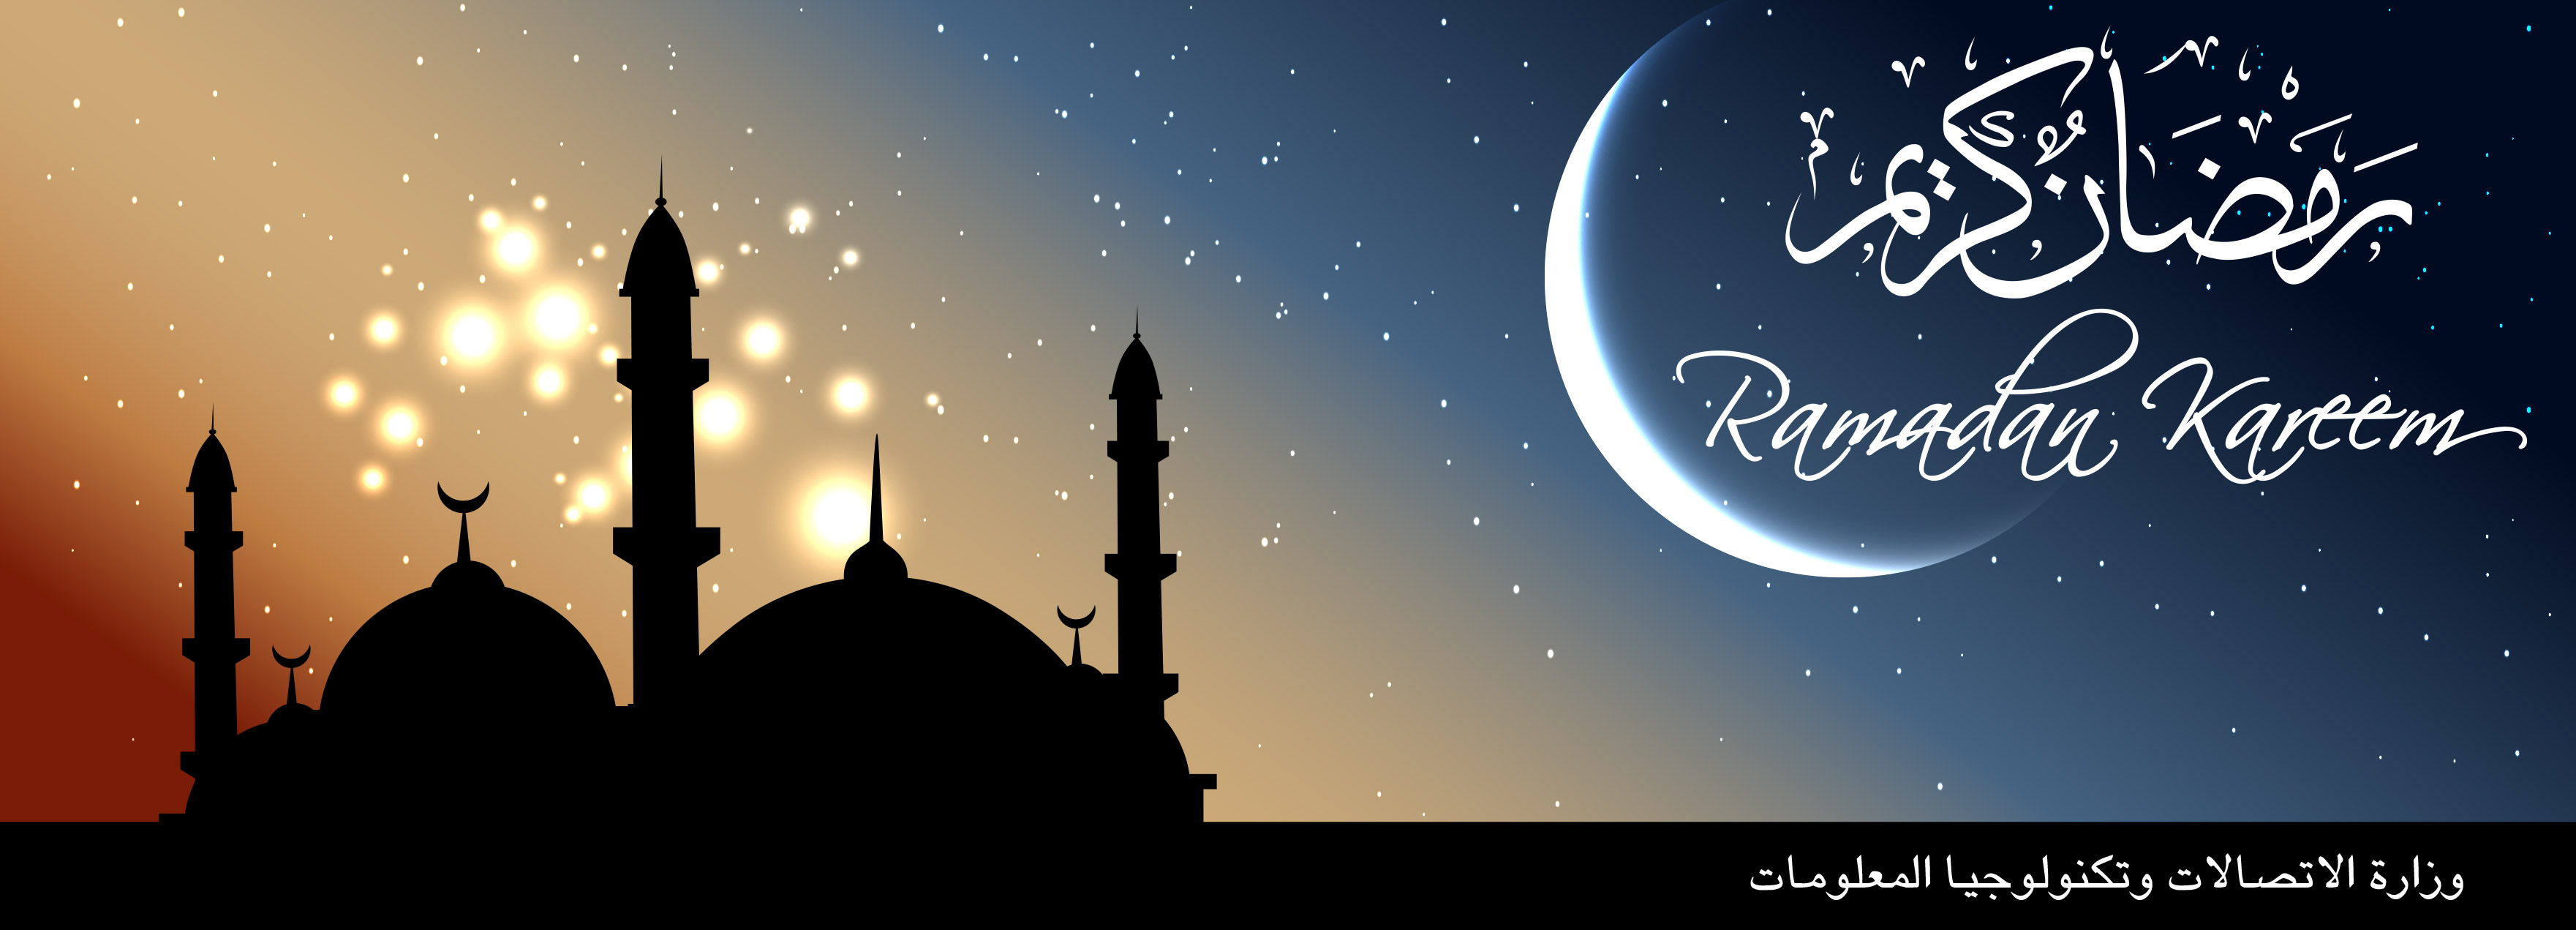 Ramadan Images, Fractal Ramadan Images, #20494